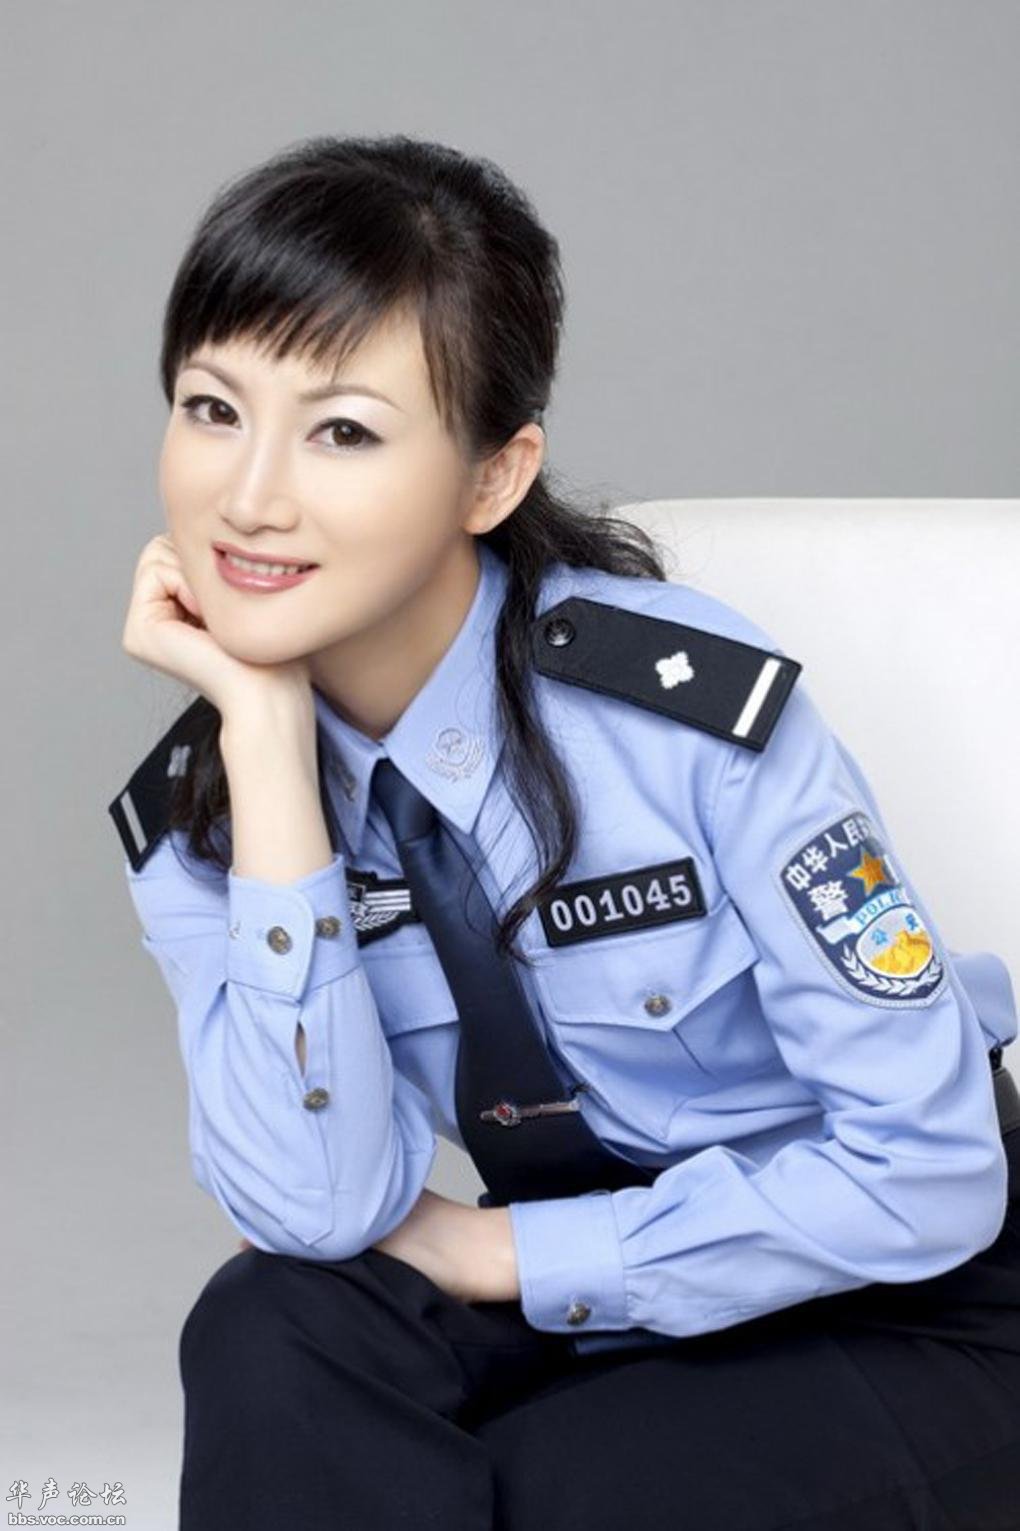 中国女兵之 漂亮可敬的女兵 女军 航母员 空军